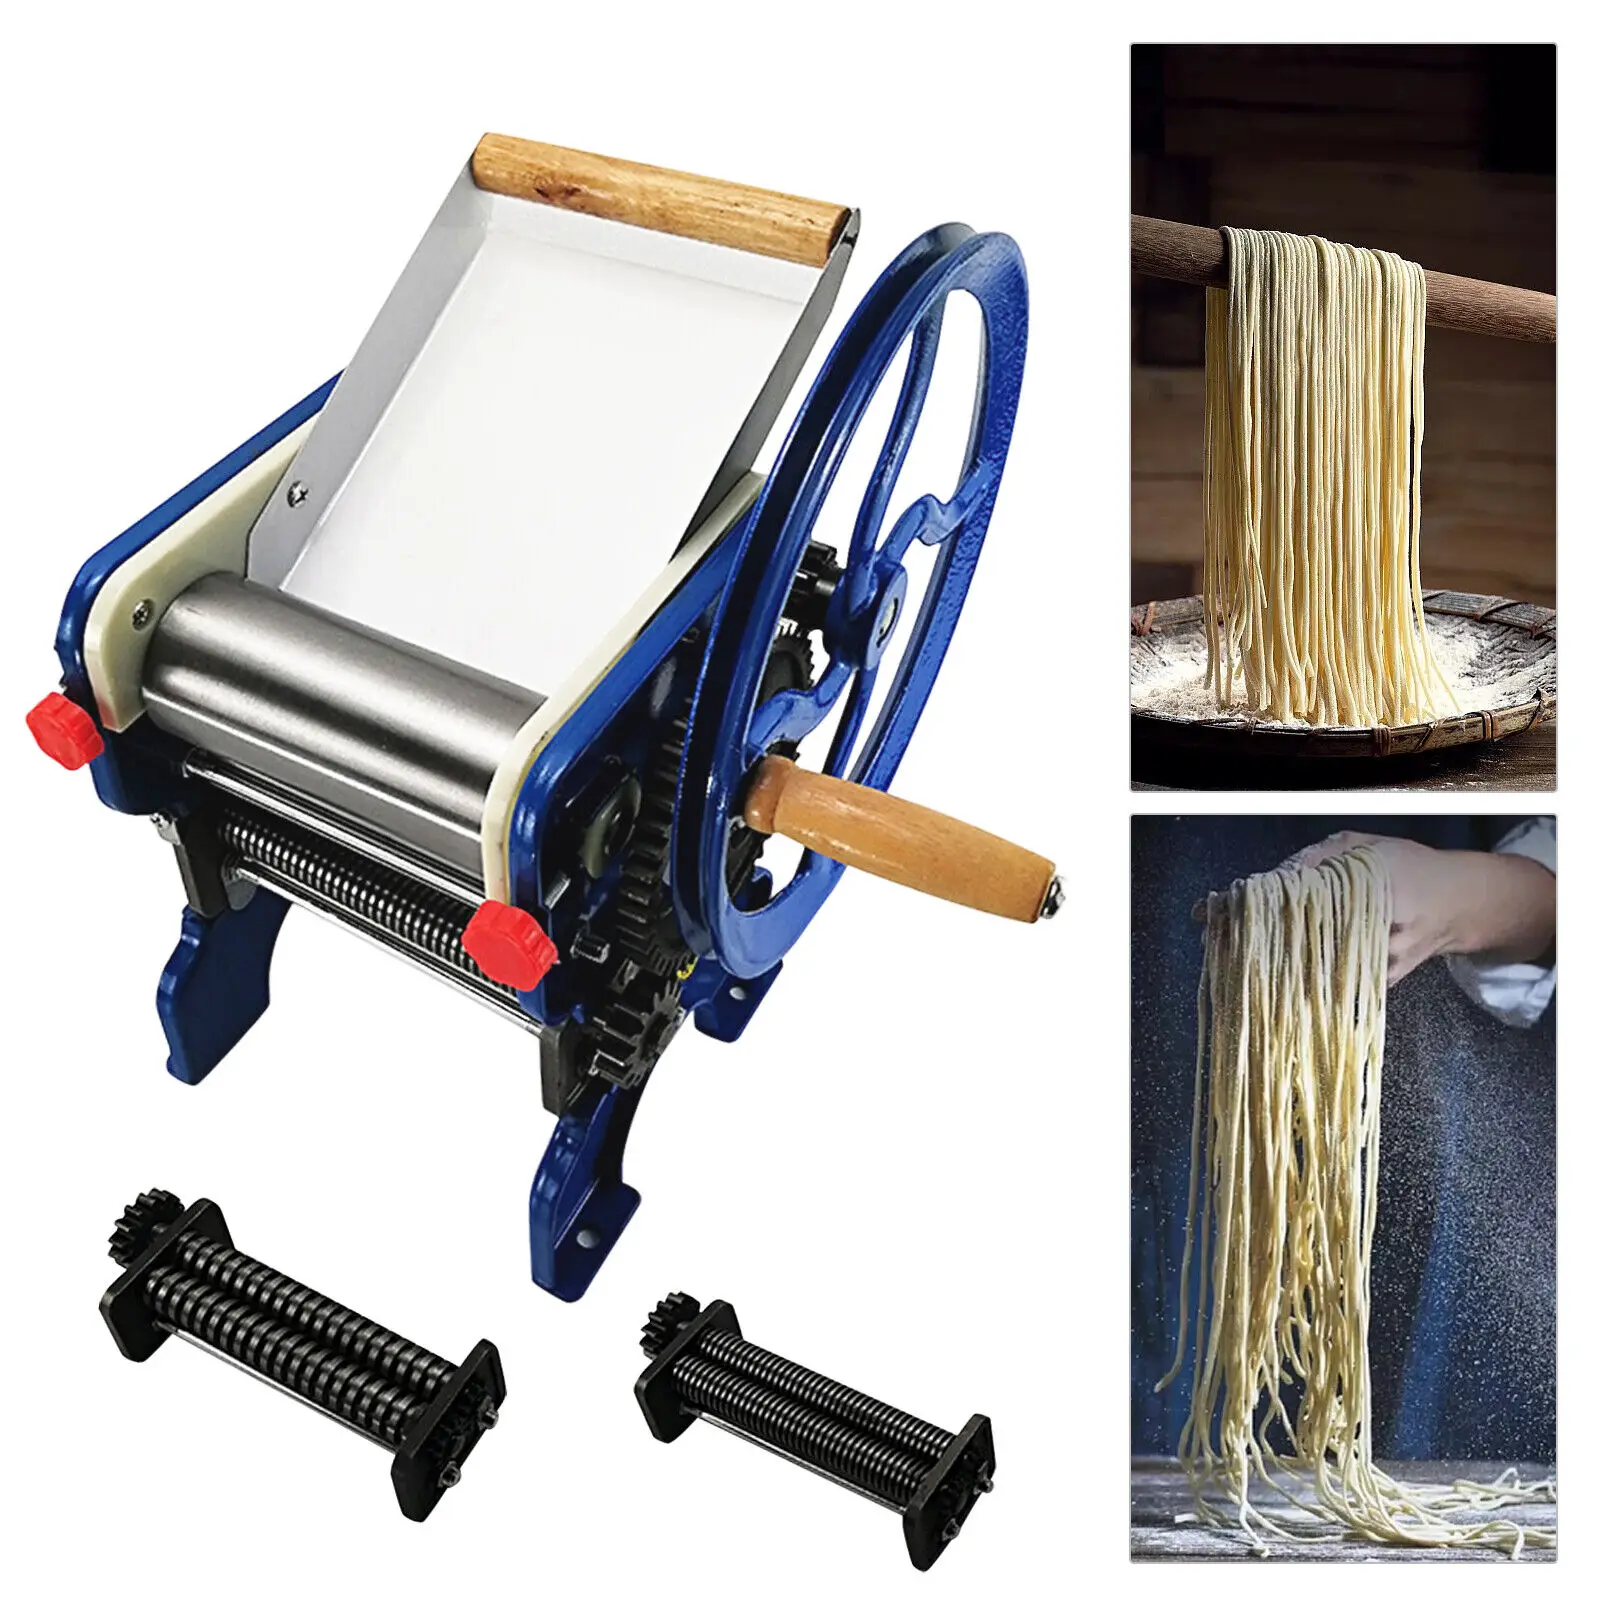 

Commercial Stainless Manual Pasta Press Maker Dough Roller Sheeter Noodle Machine Dumpling Skin Maker Adjustable